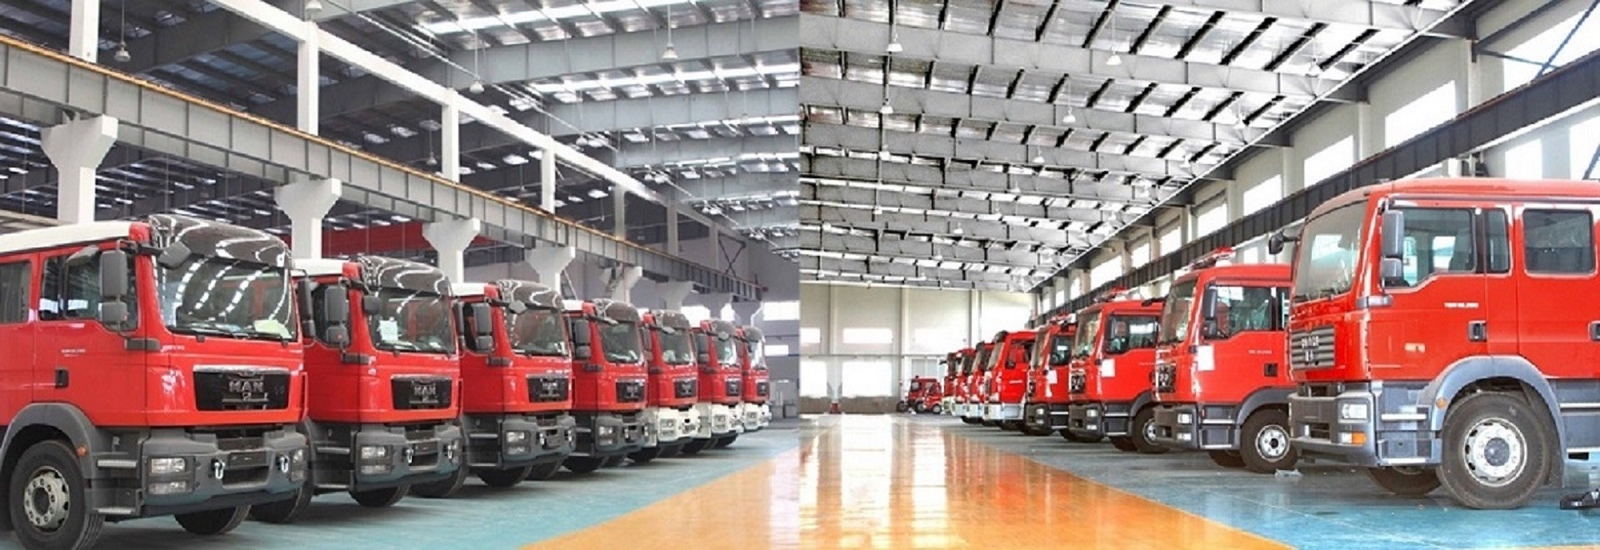 ποιότητας Εμπορικά πυροσβεστικά οχήματα εργοστάσιο